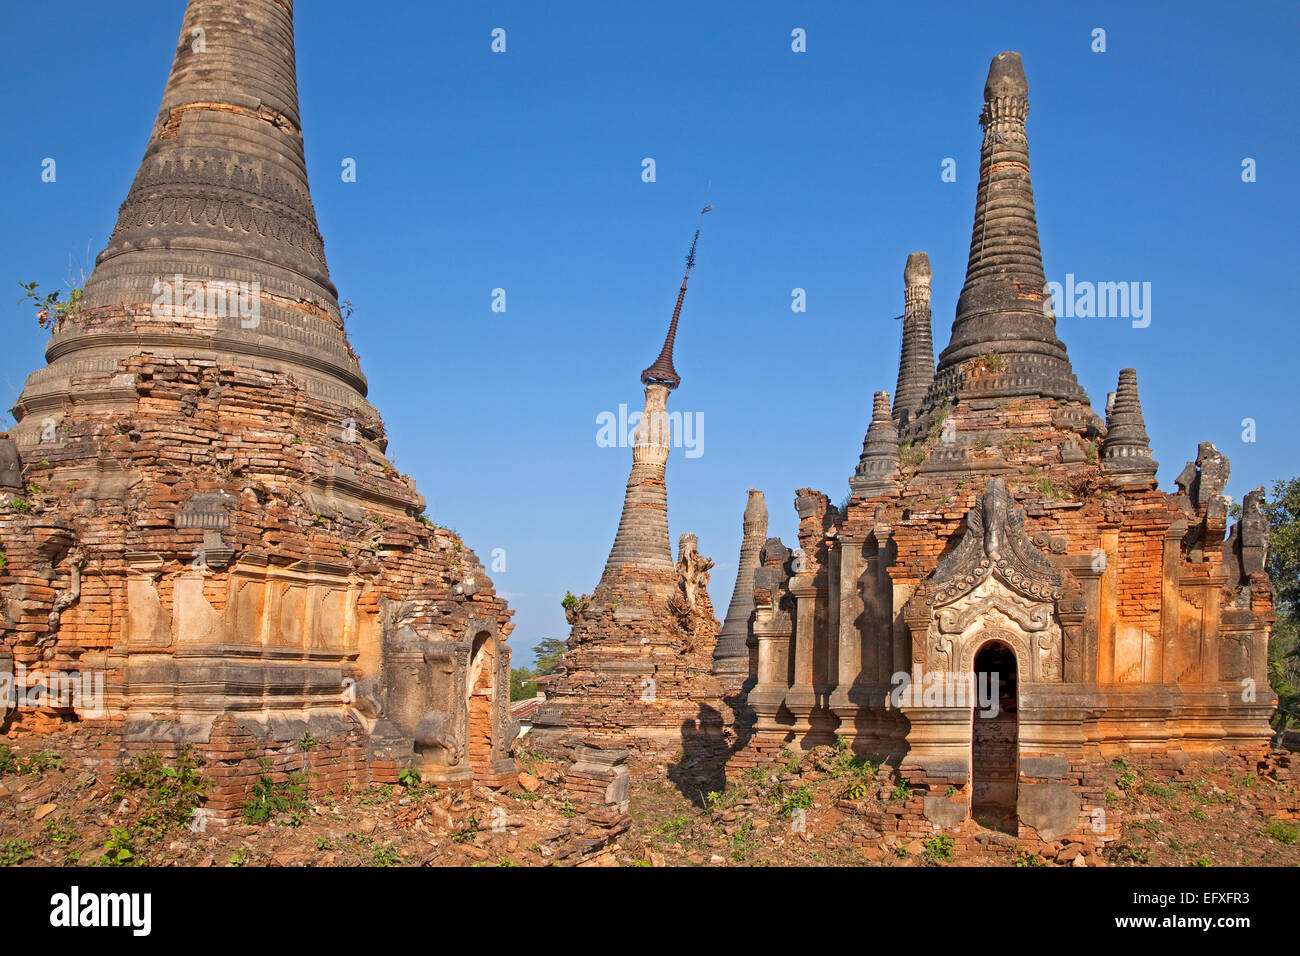 Alten rote Ziegeln buddhistischen Stupas in der Nähe des Dorfes In Dein / Indein, Inle-See, Nyaungshwe Shan State in Myanmar / Birma Stockfoto